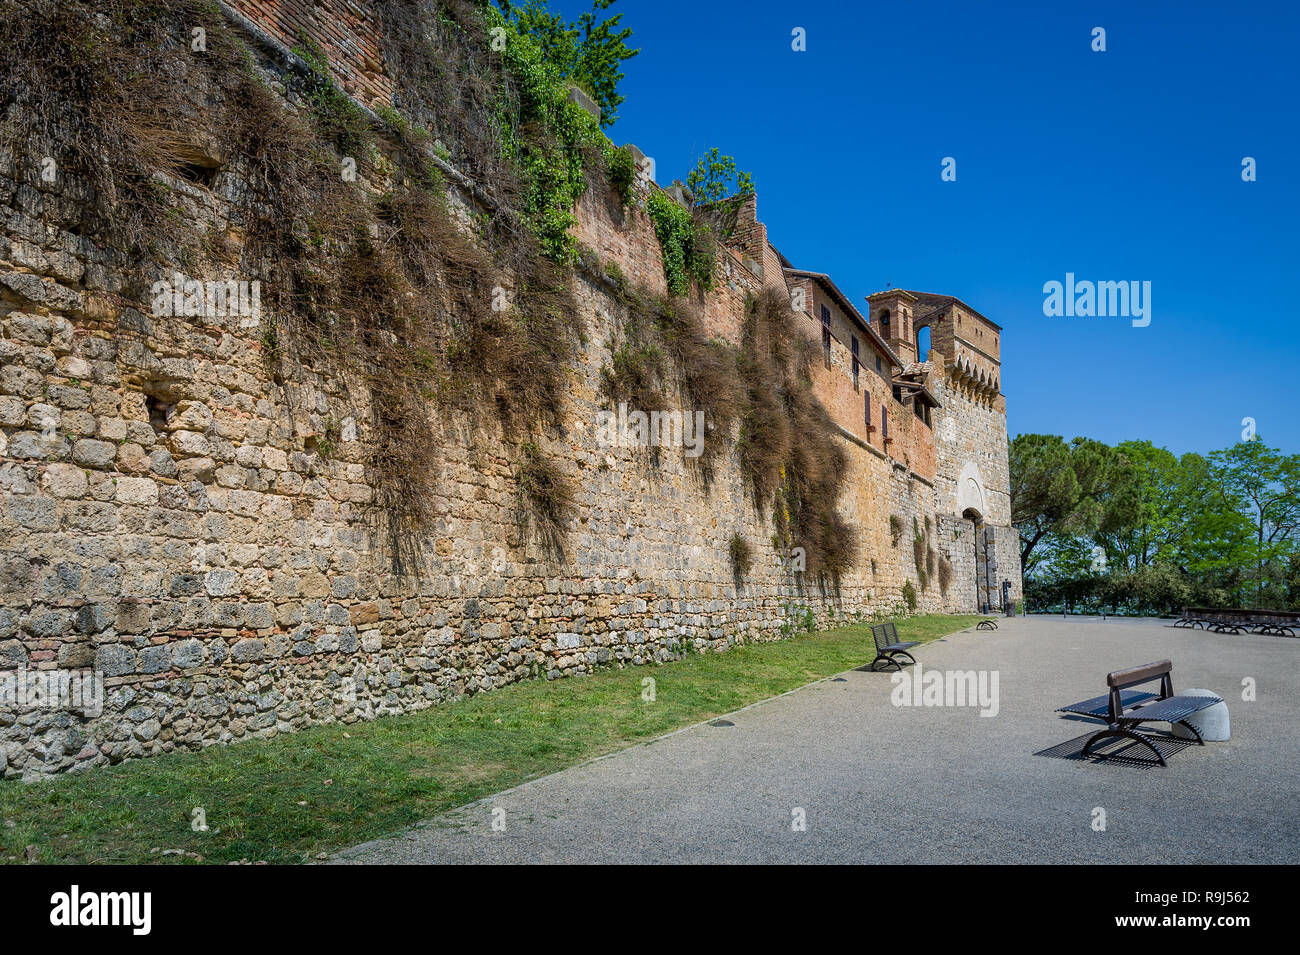 Parete di ingresso di San Gimignano fortezza medievale. Attrazioni storiche della regione Toscana, Italia. Foto Stock